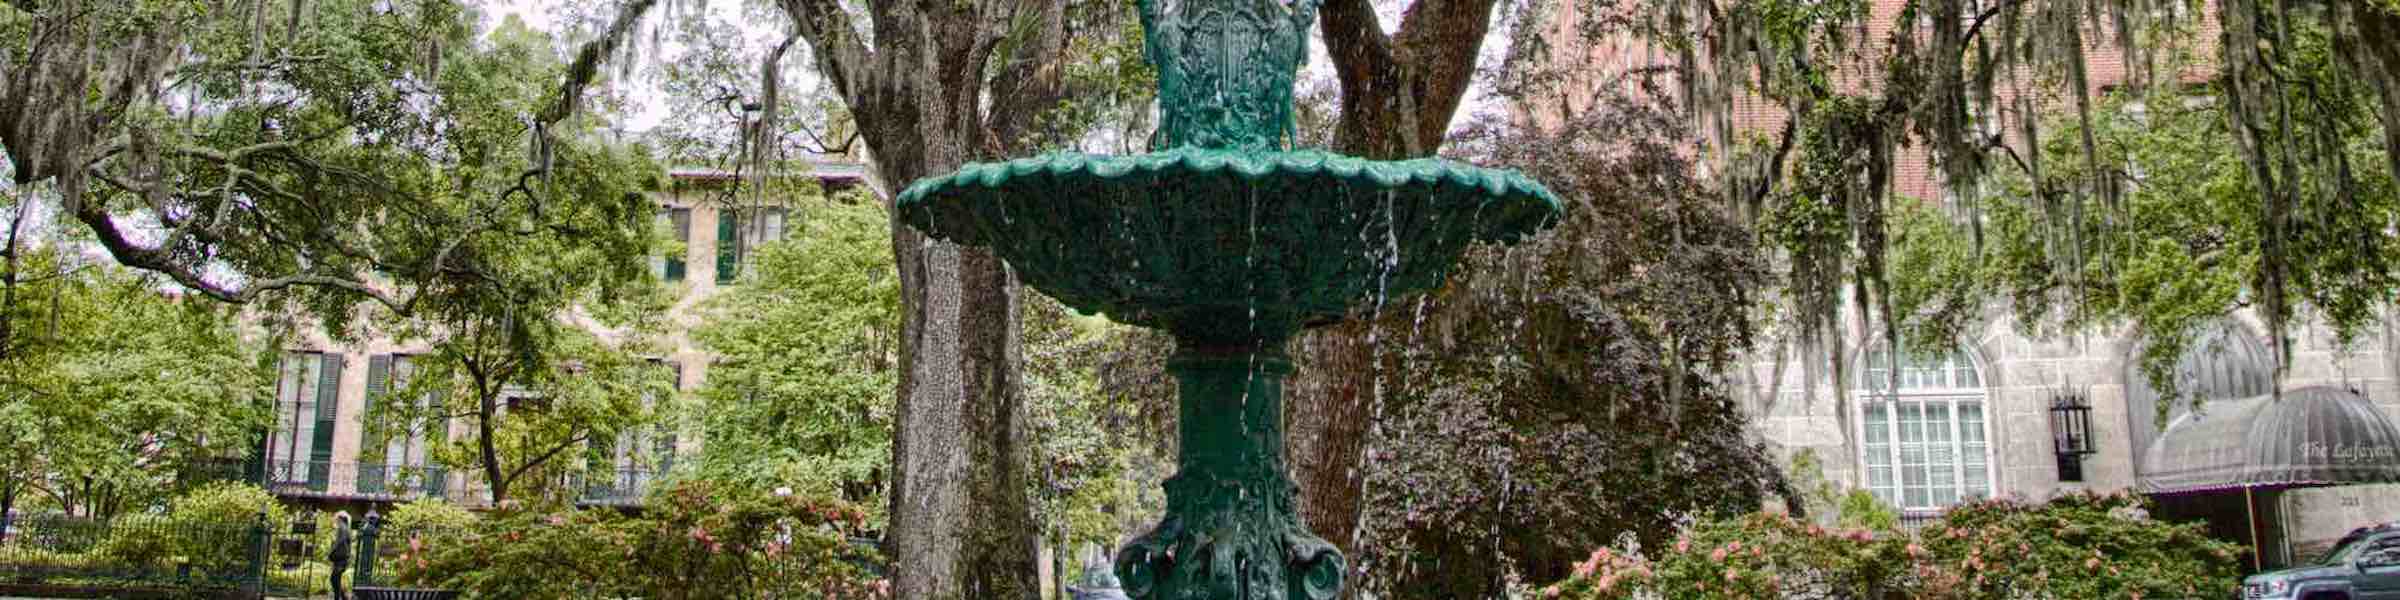 Memorial fountain in Lafayette Square, Savannah, GA.